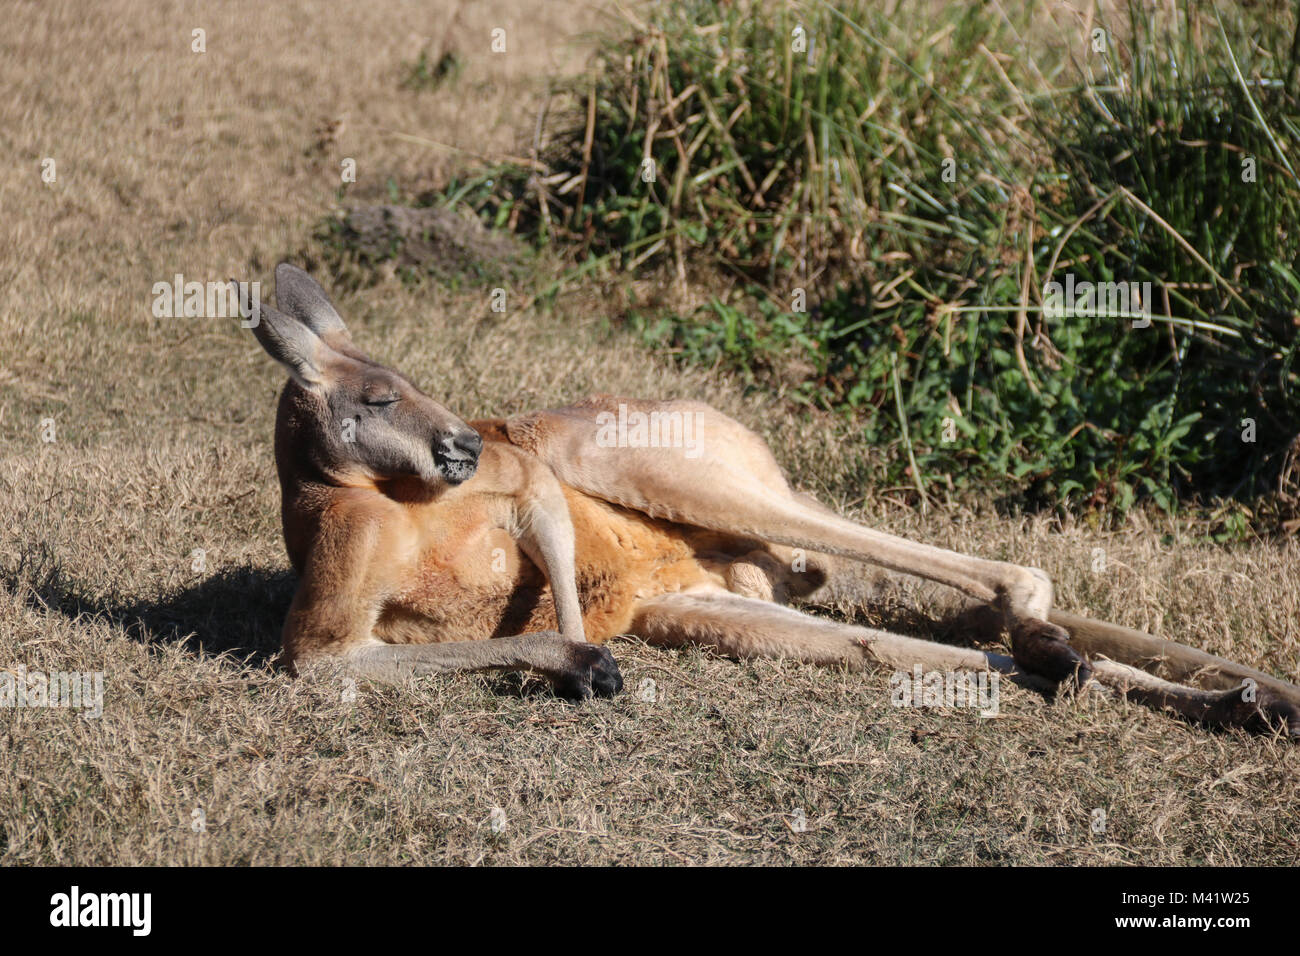 Kangaroo Relaxing in the sun Stock Photo